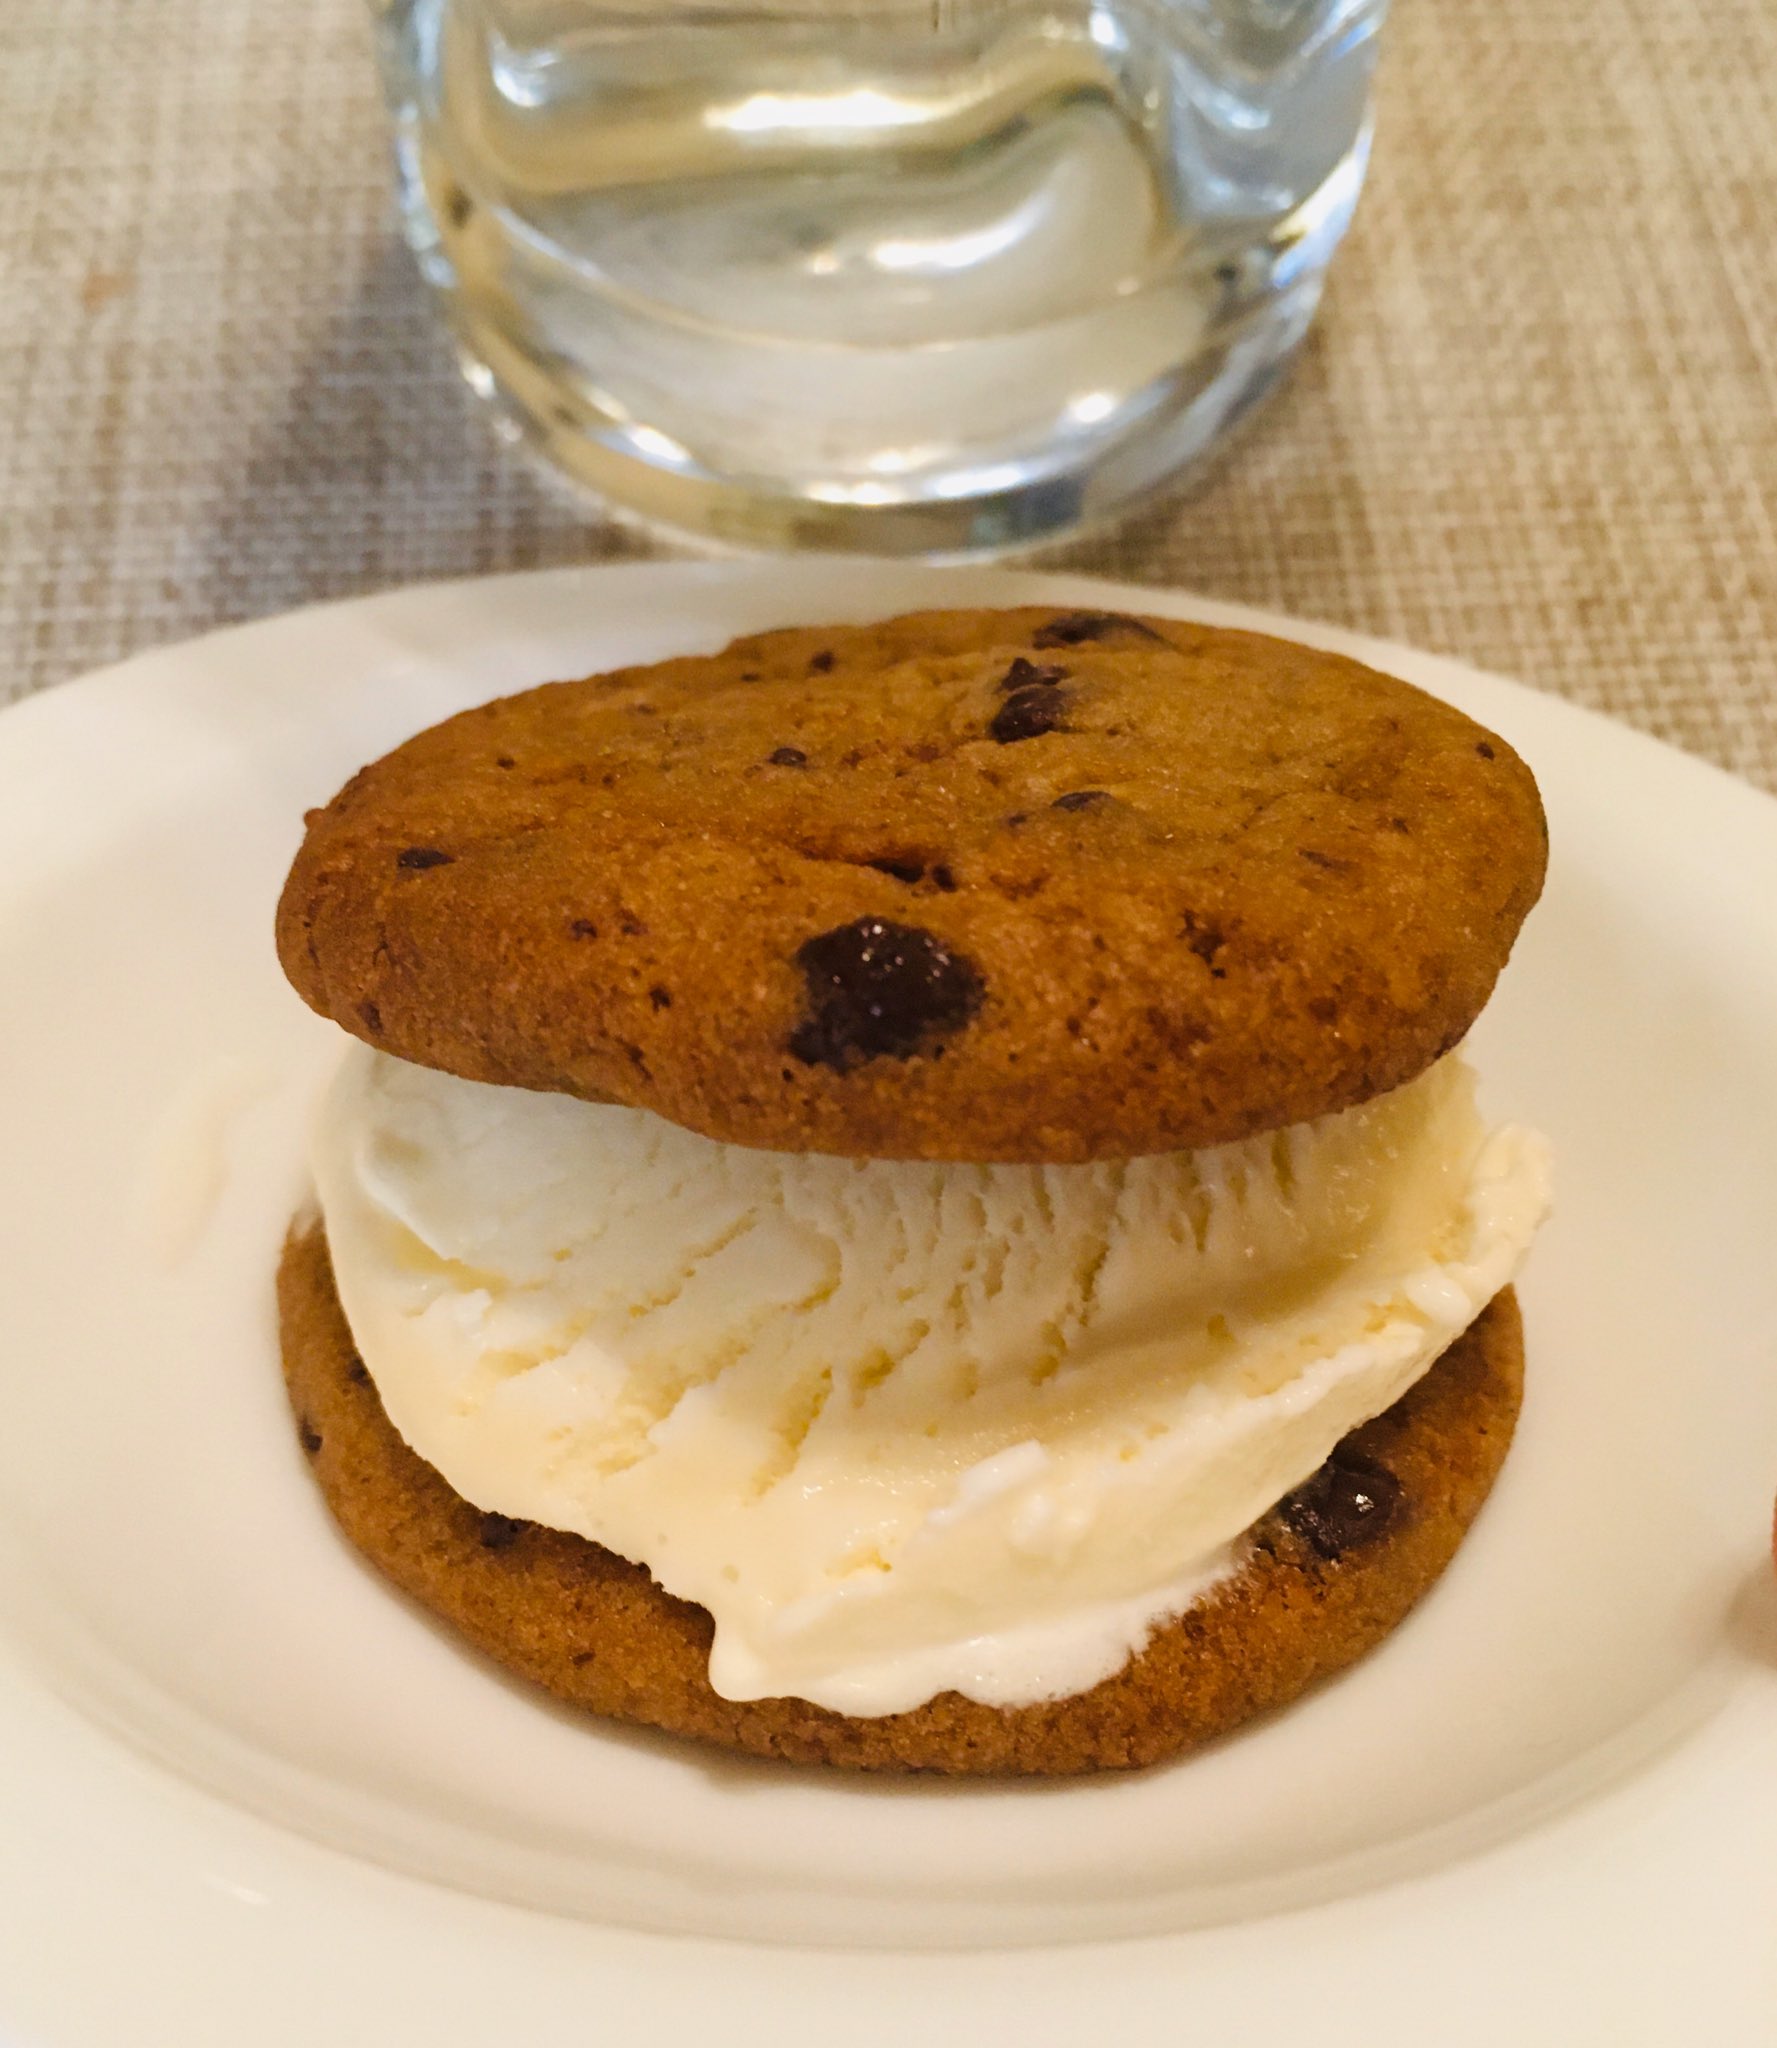 Ritsuko ちょっとチンしたチョコレートチップクッキーにバニラアイスを挟んで アイスクリームサンドイッチ を食べている クッキーのほんのり温かく柔らかい食感にちょっぴり溶け気味のアイスクリームが美味しい T Co Iuo1jikljb Twitter